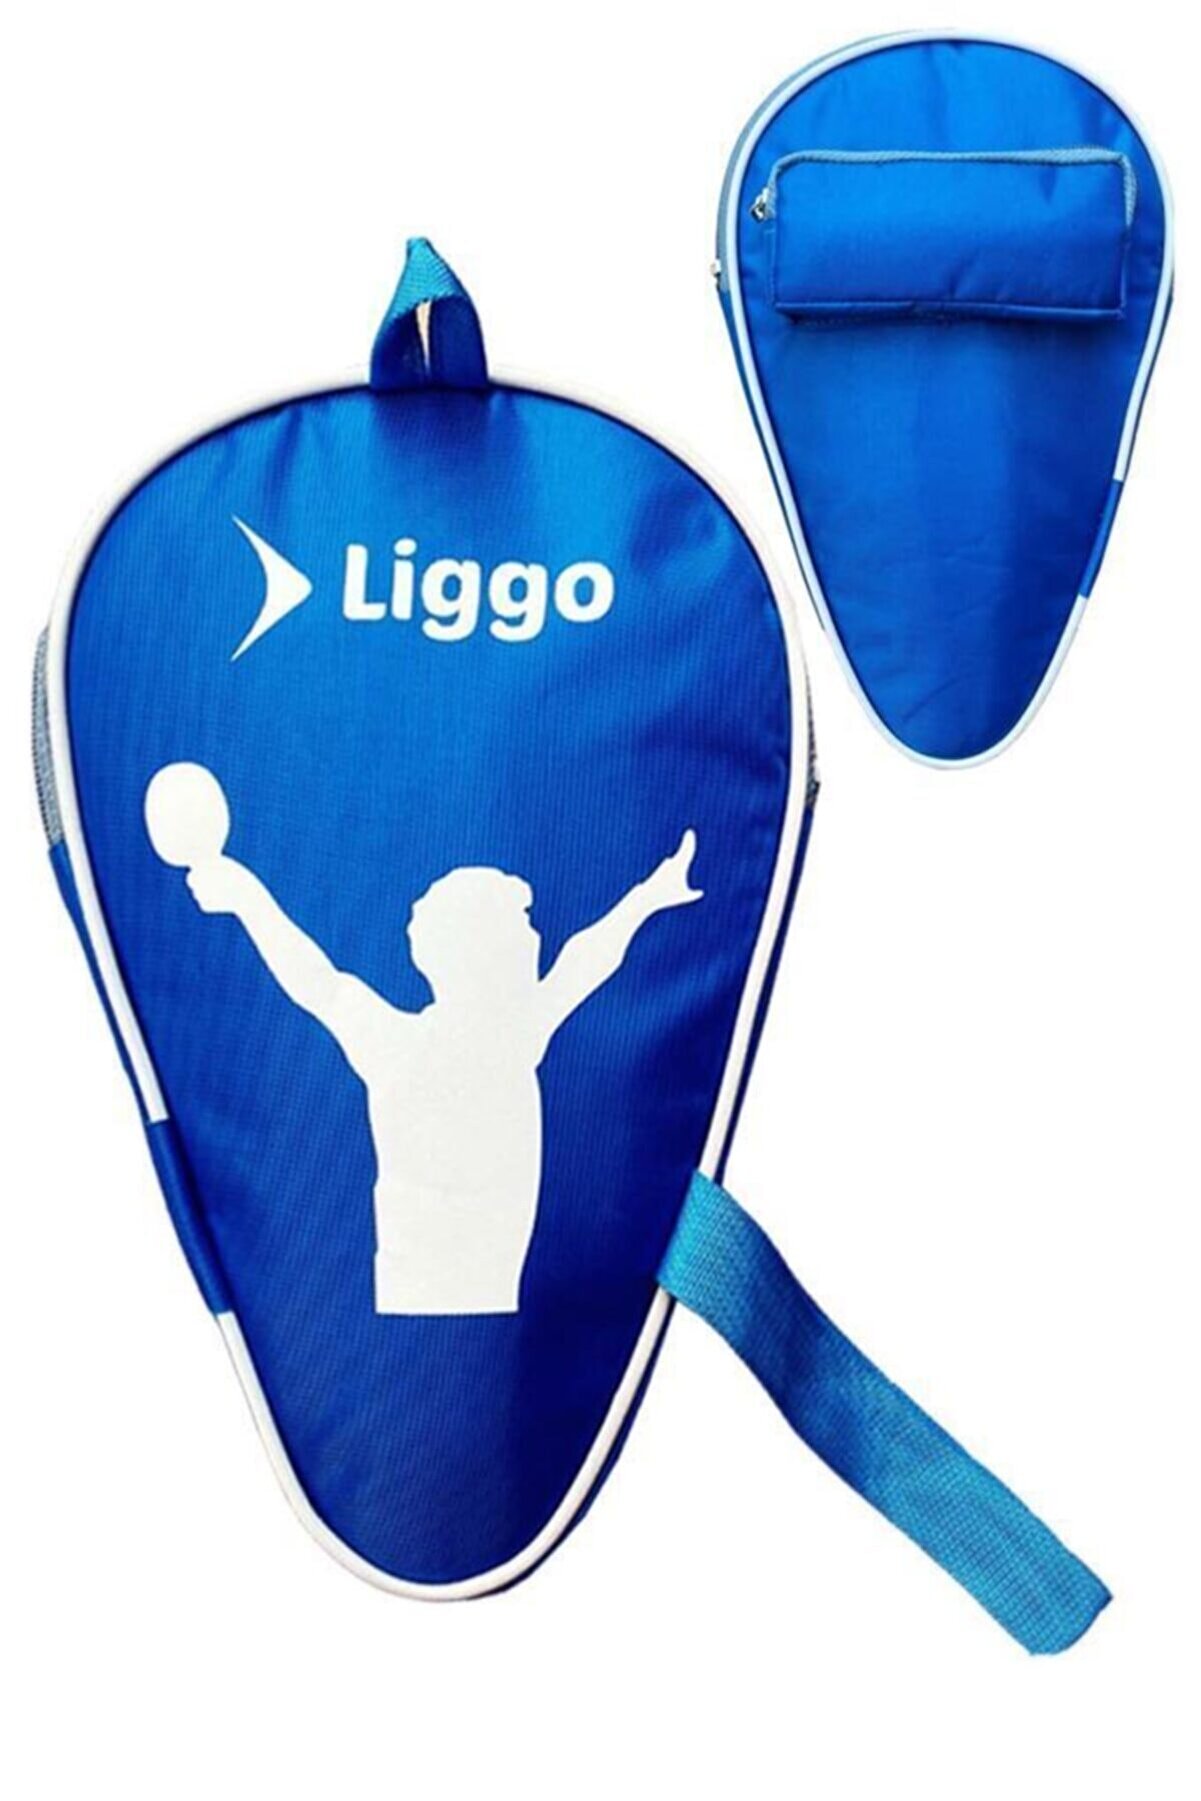 Liggo Masa Tenisi Raketi Kılıfı Pinpon Topu ve Raket Çantası